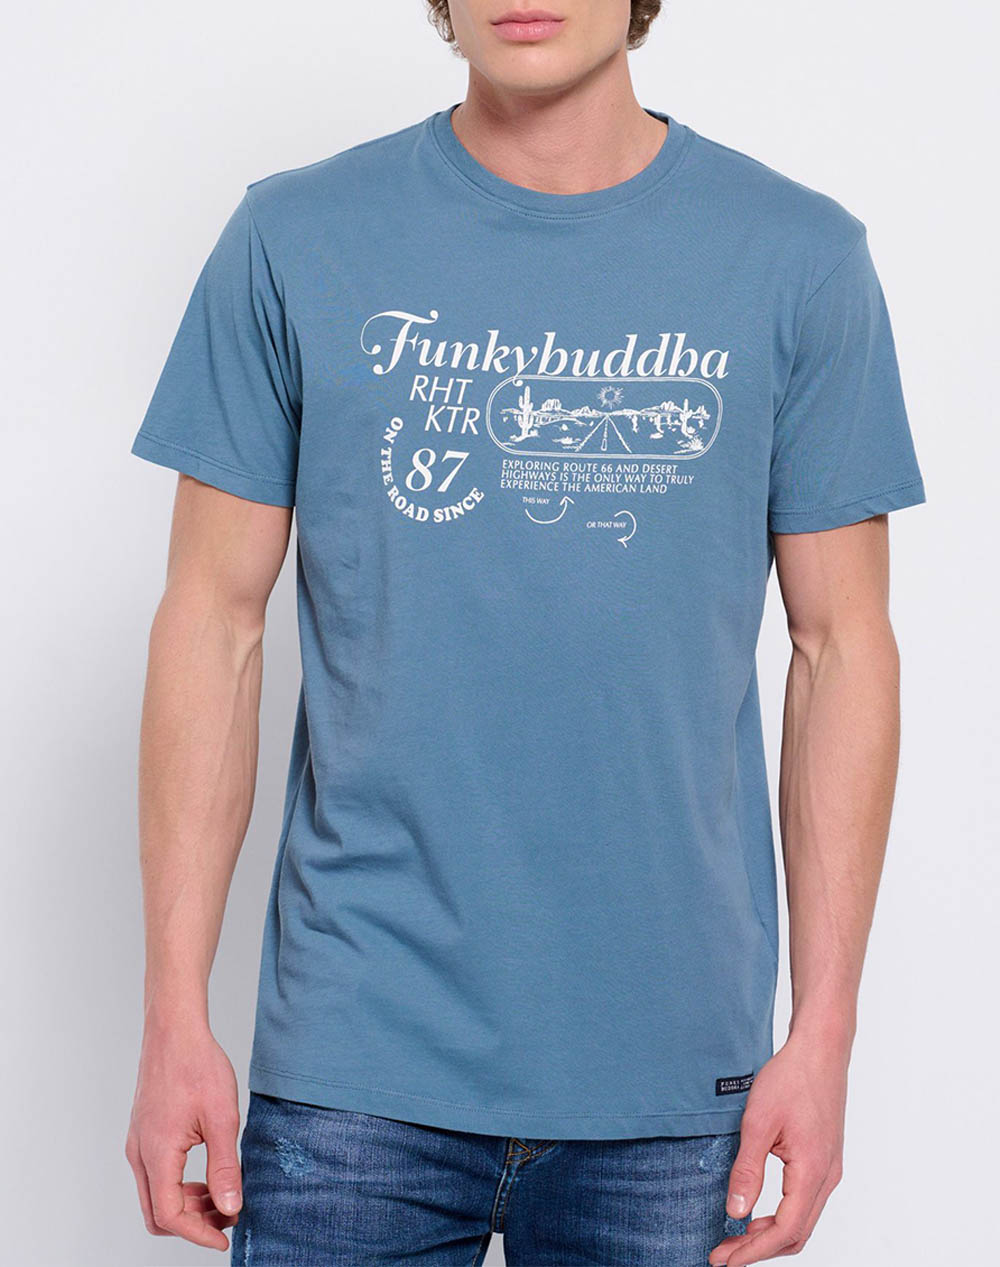 FUNKY BUDDHA Retro t-shirt από οργανικό βαμβάκι με τύπωμα FBM007-034-04-DUSTY SteelBlue 3620PFUNK3400138_XR13843